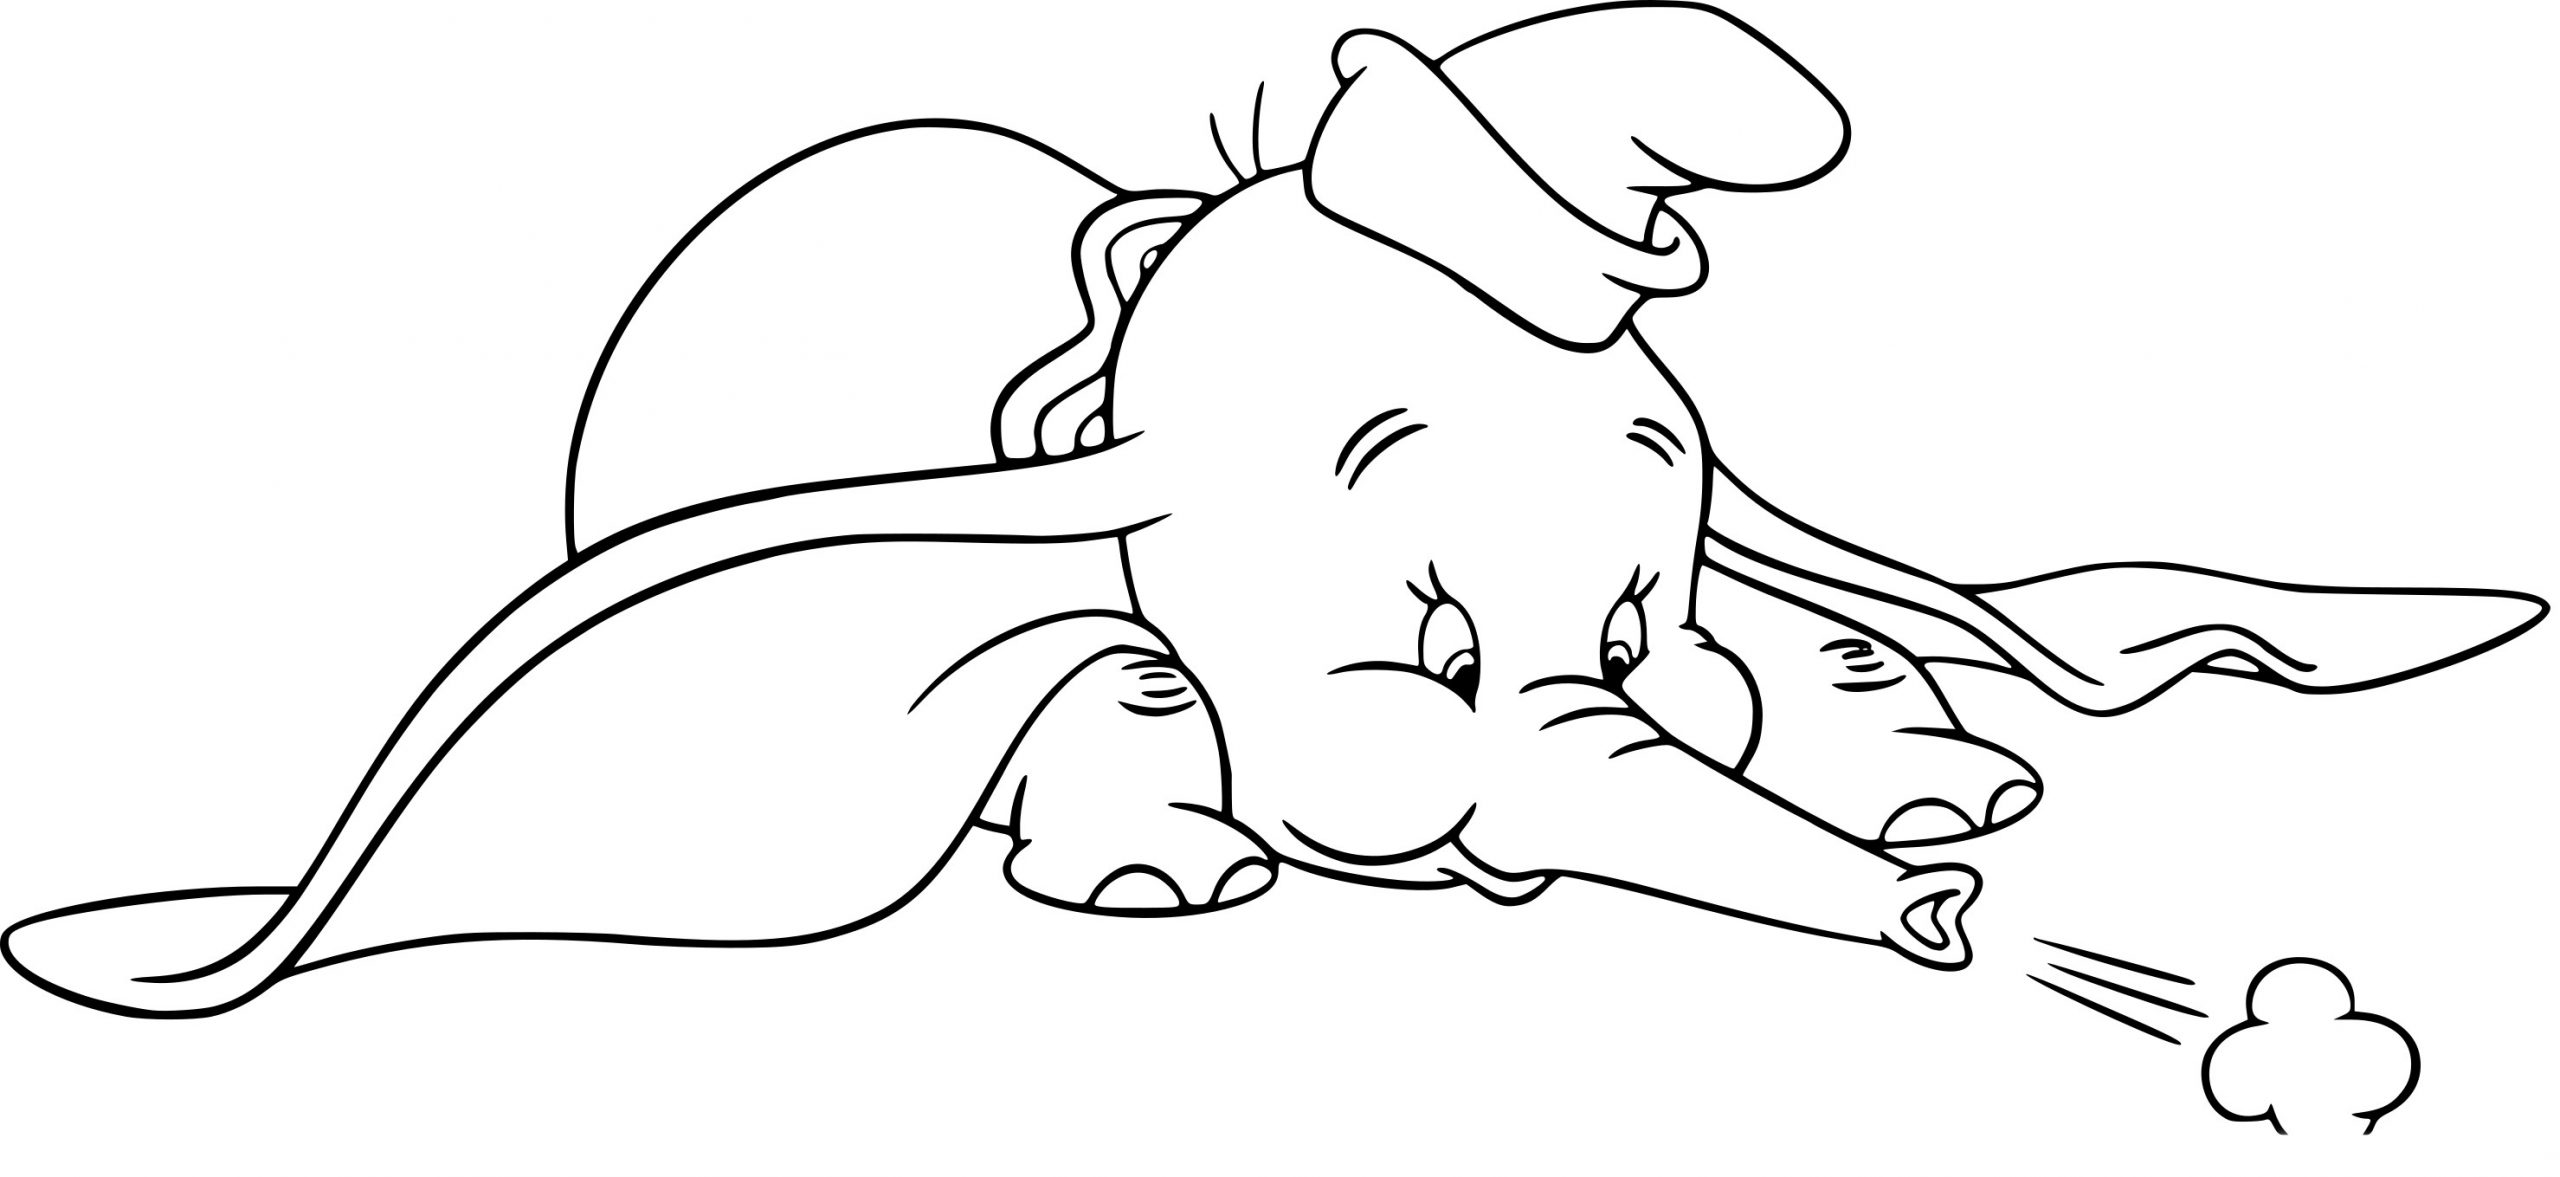 Coloriage Dumbo Dessin À Imprimer Sur Coloriages dedans Dessin Dumbo 